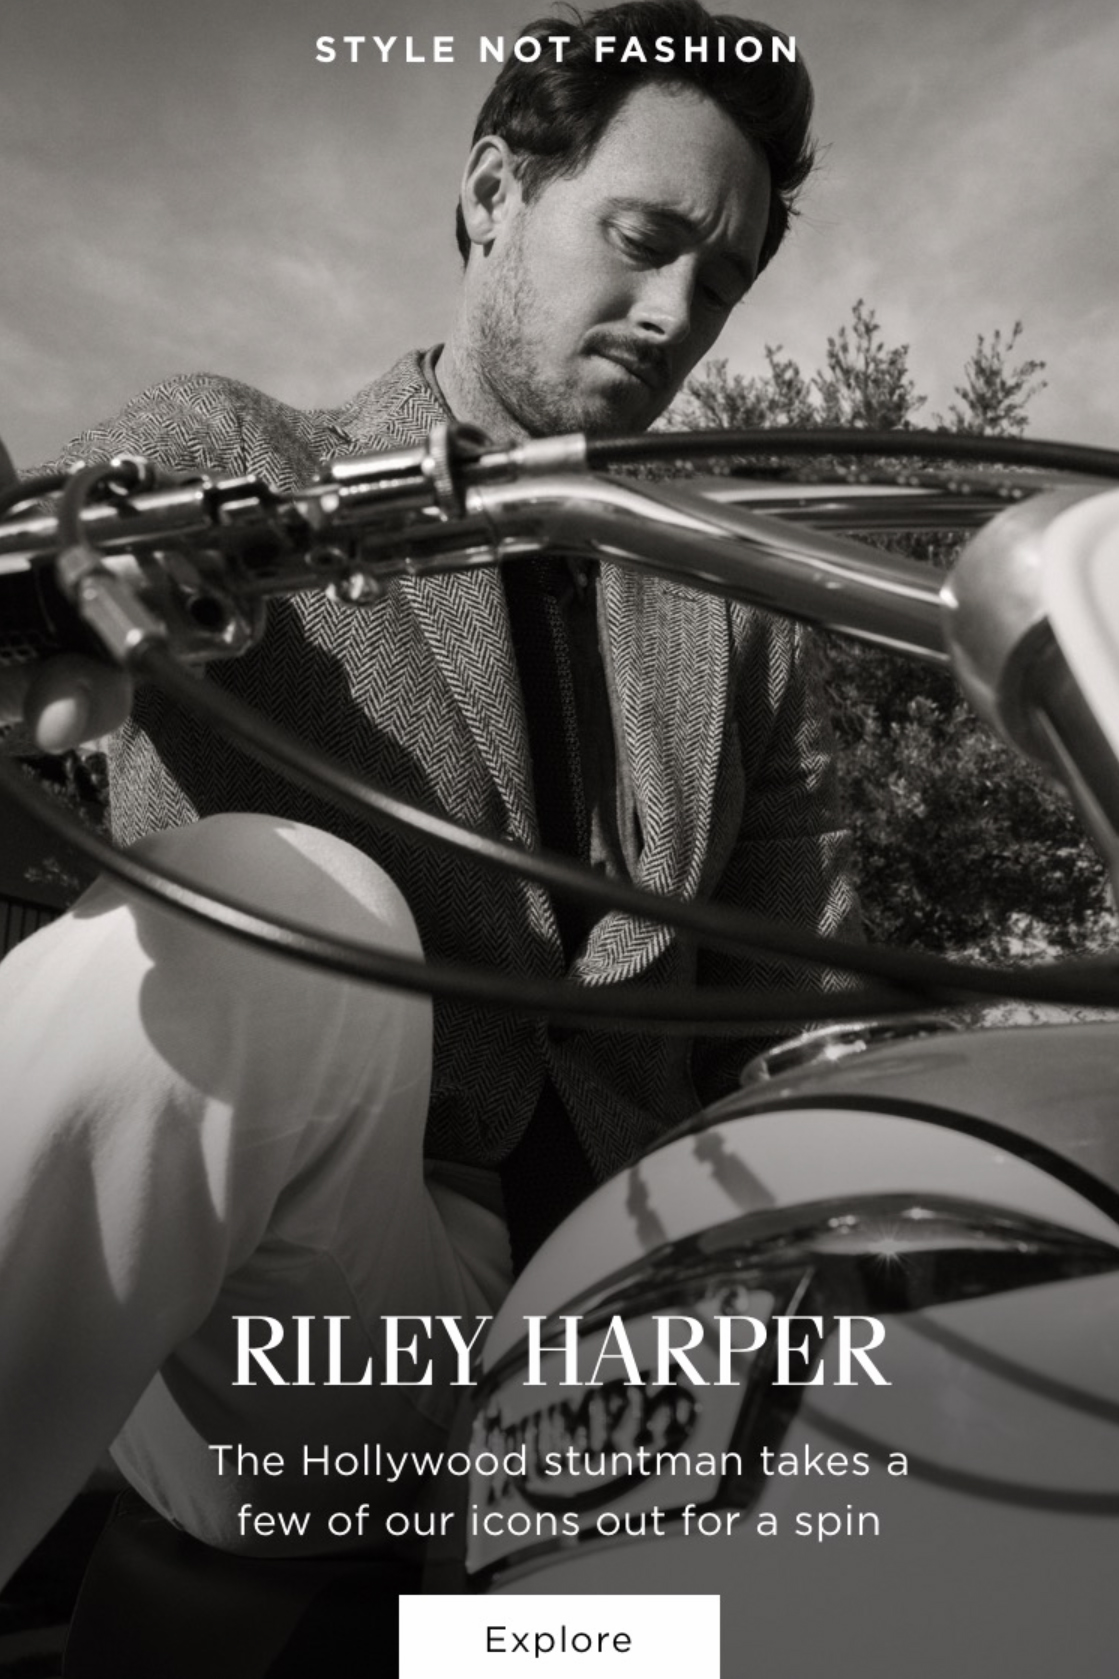 Riley Harper for Polo Ralph Lauren